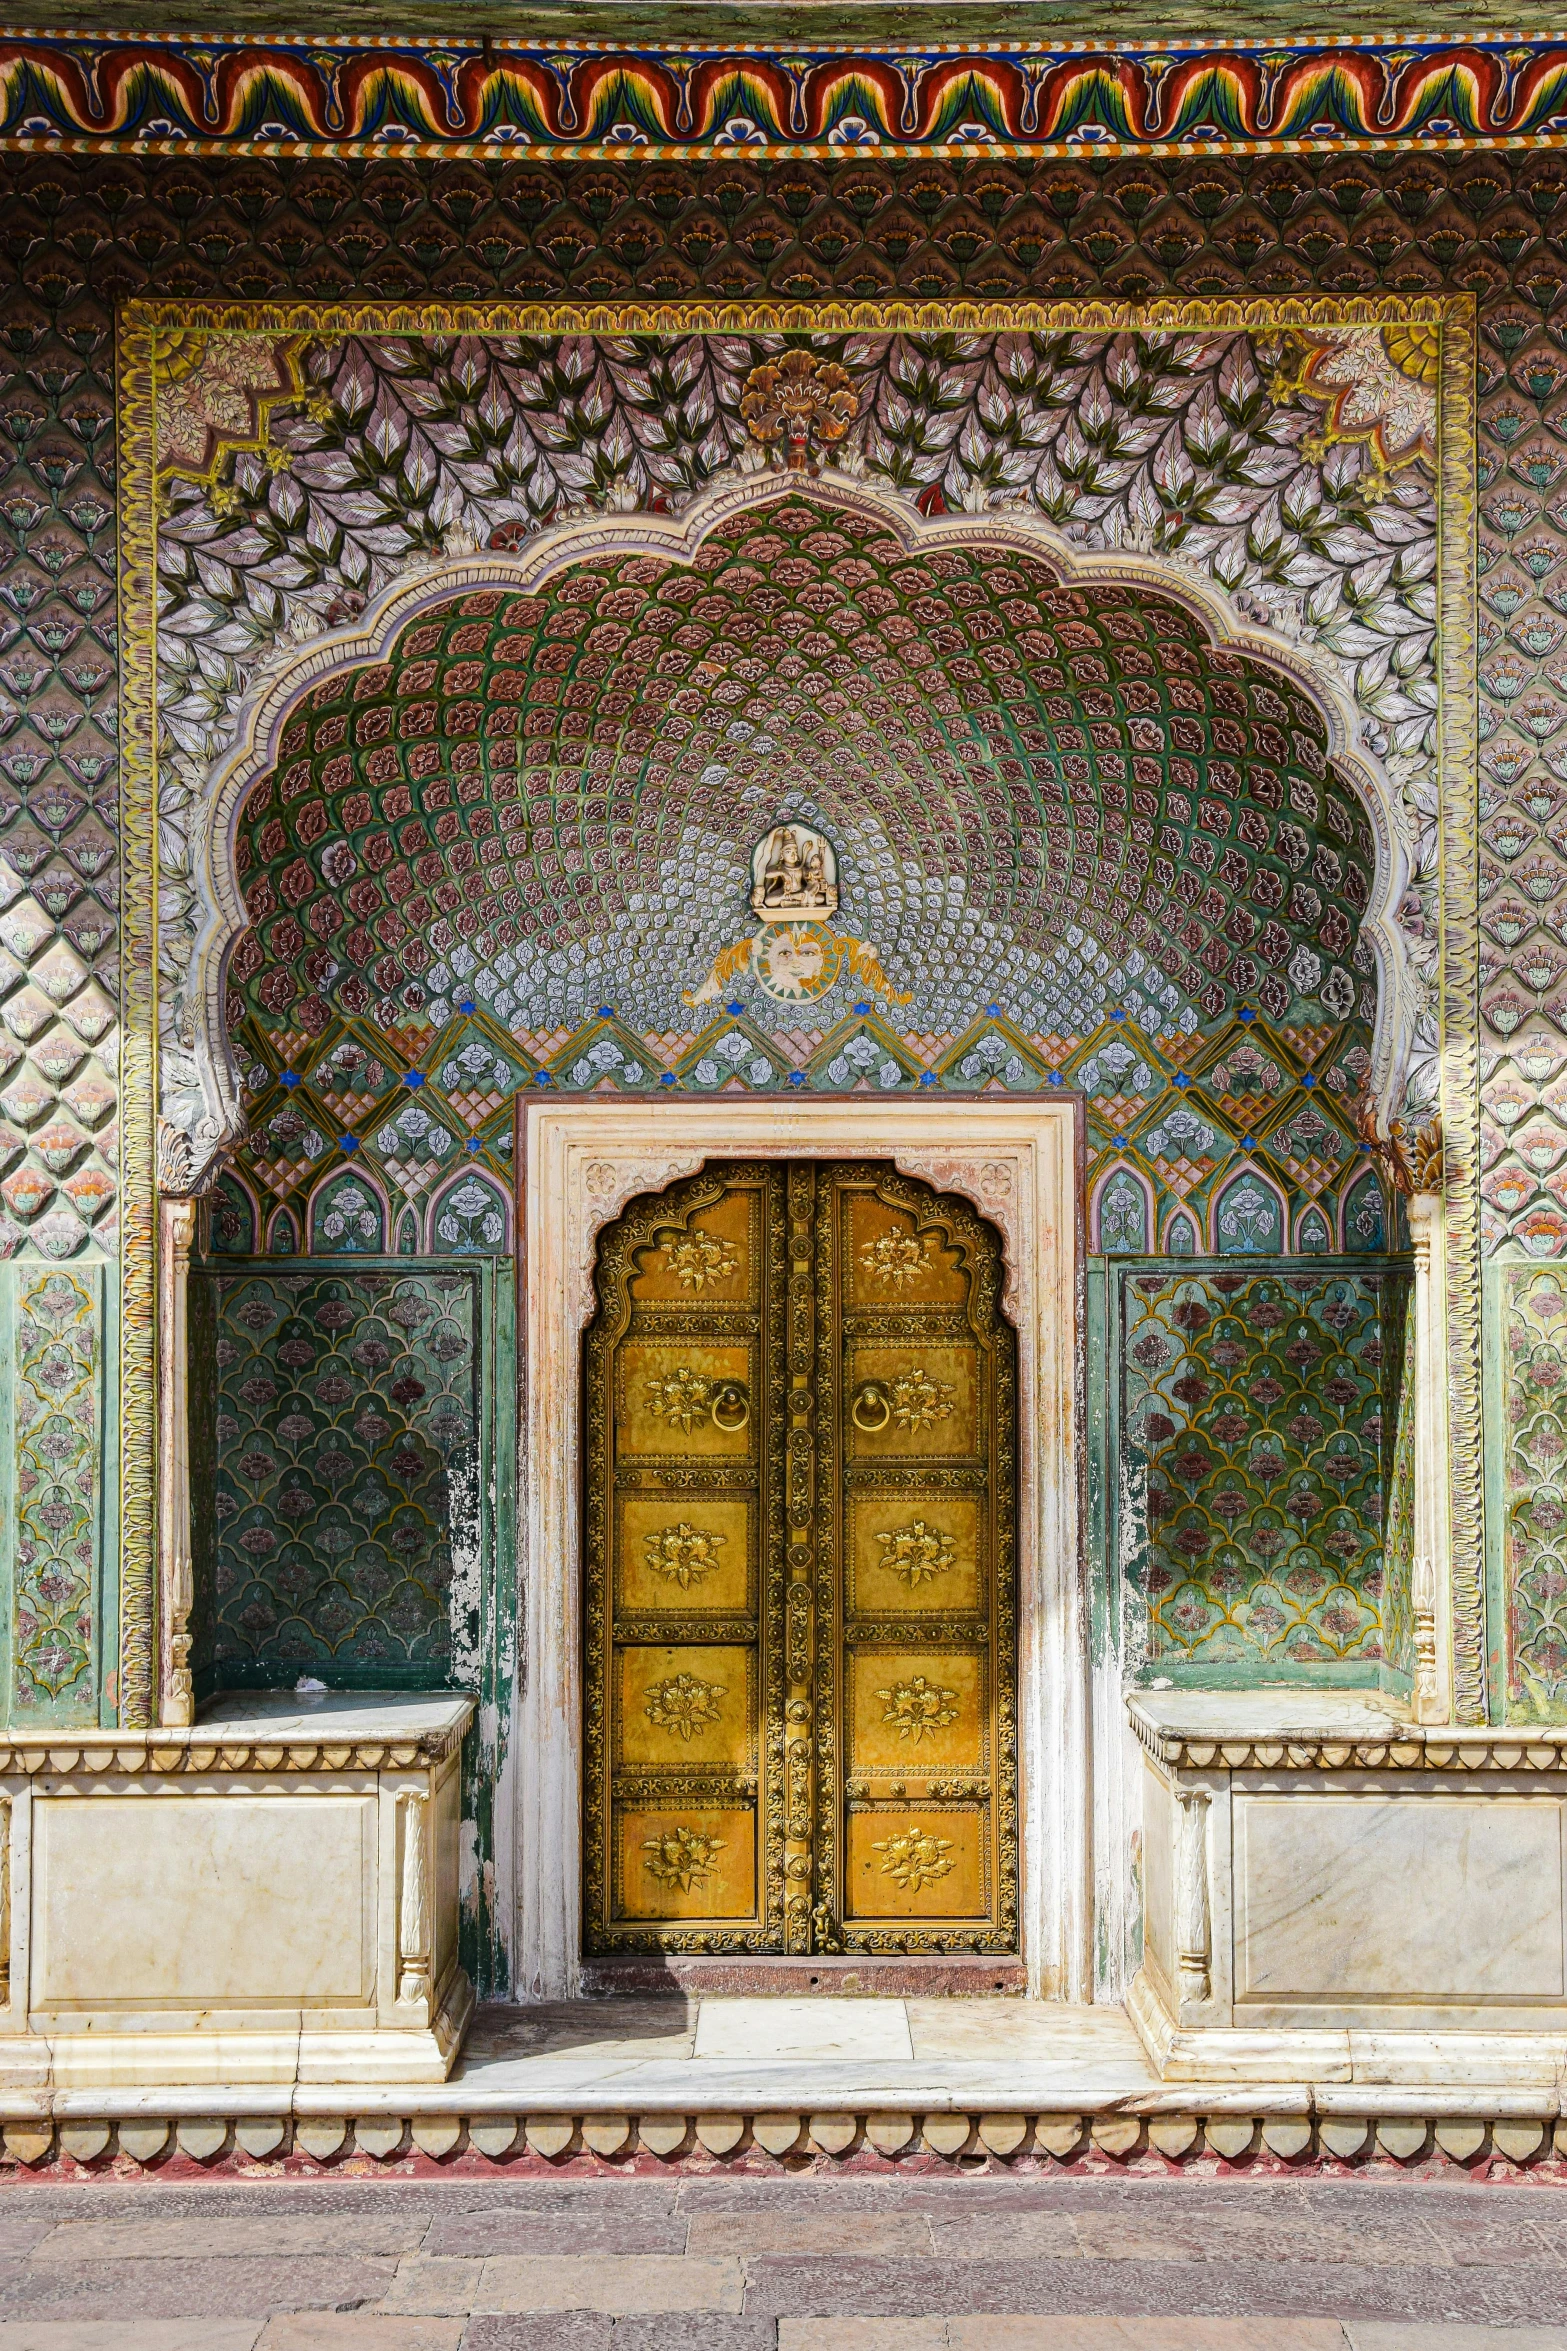 golden door in ornate, green building with pillars